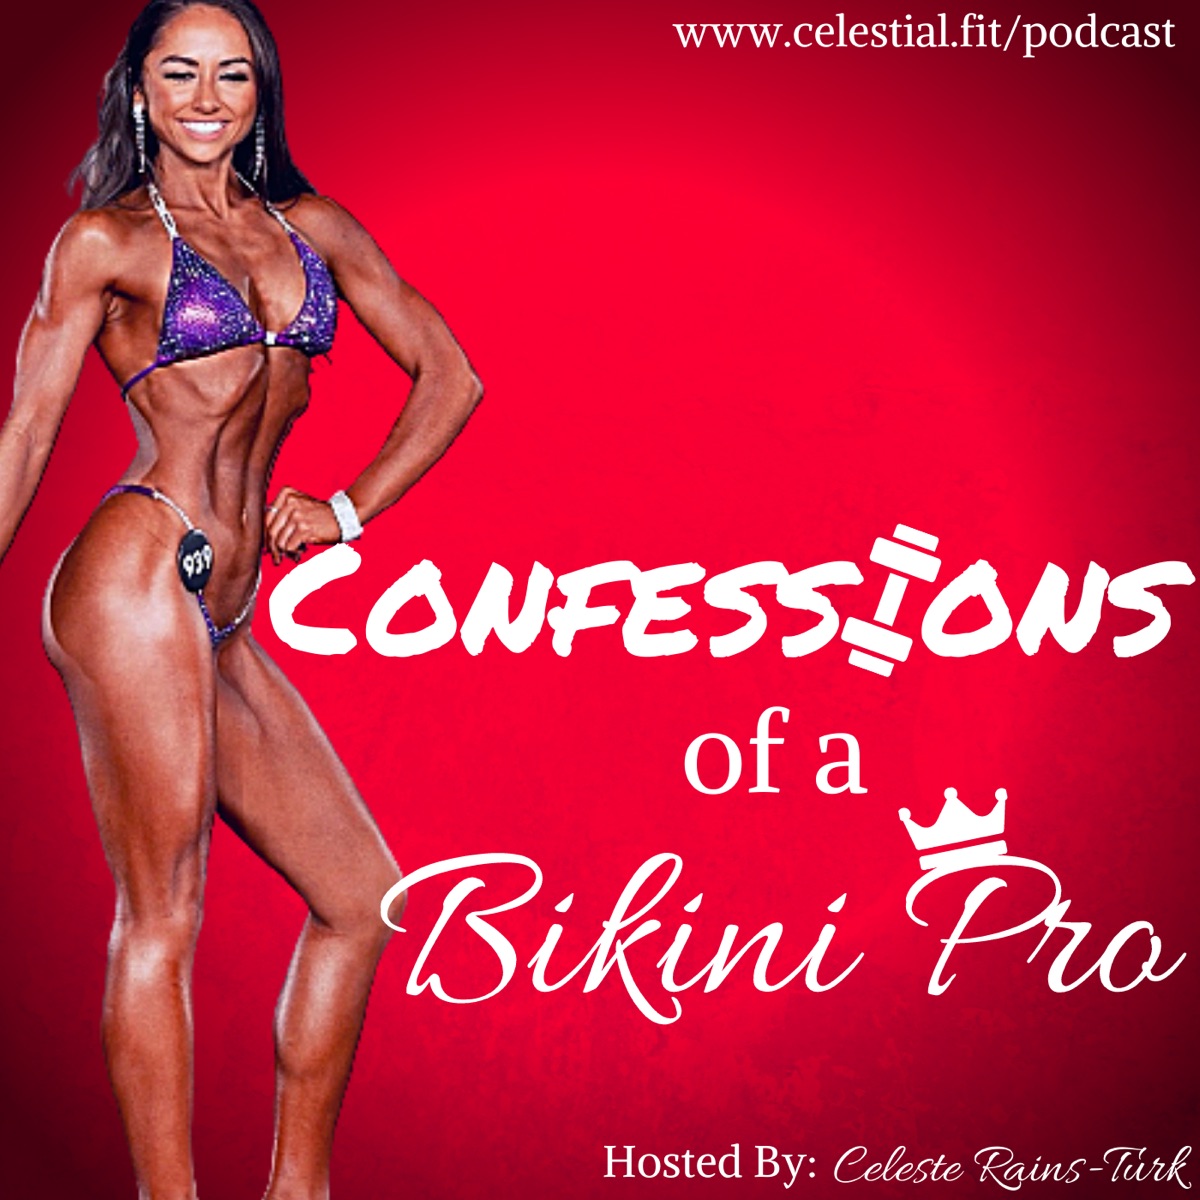 Confessions of a Bikini Pro – Podcast picture